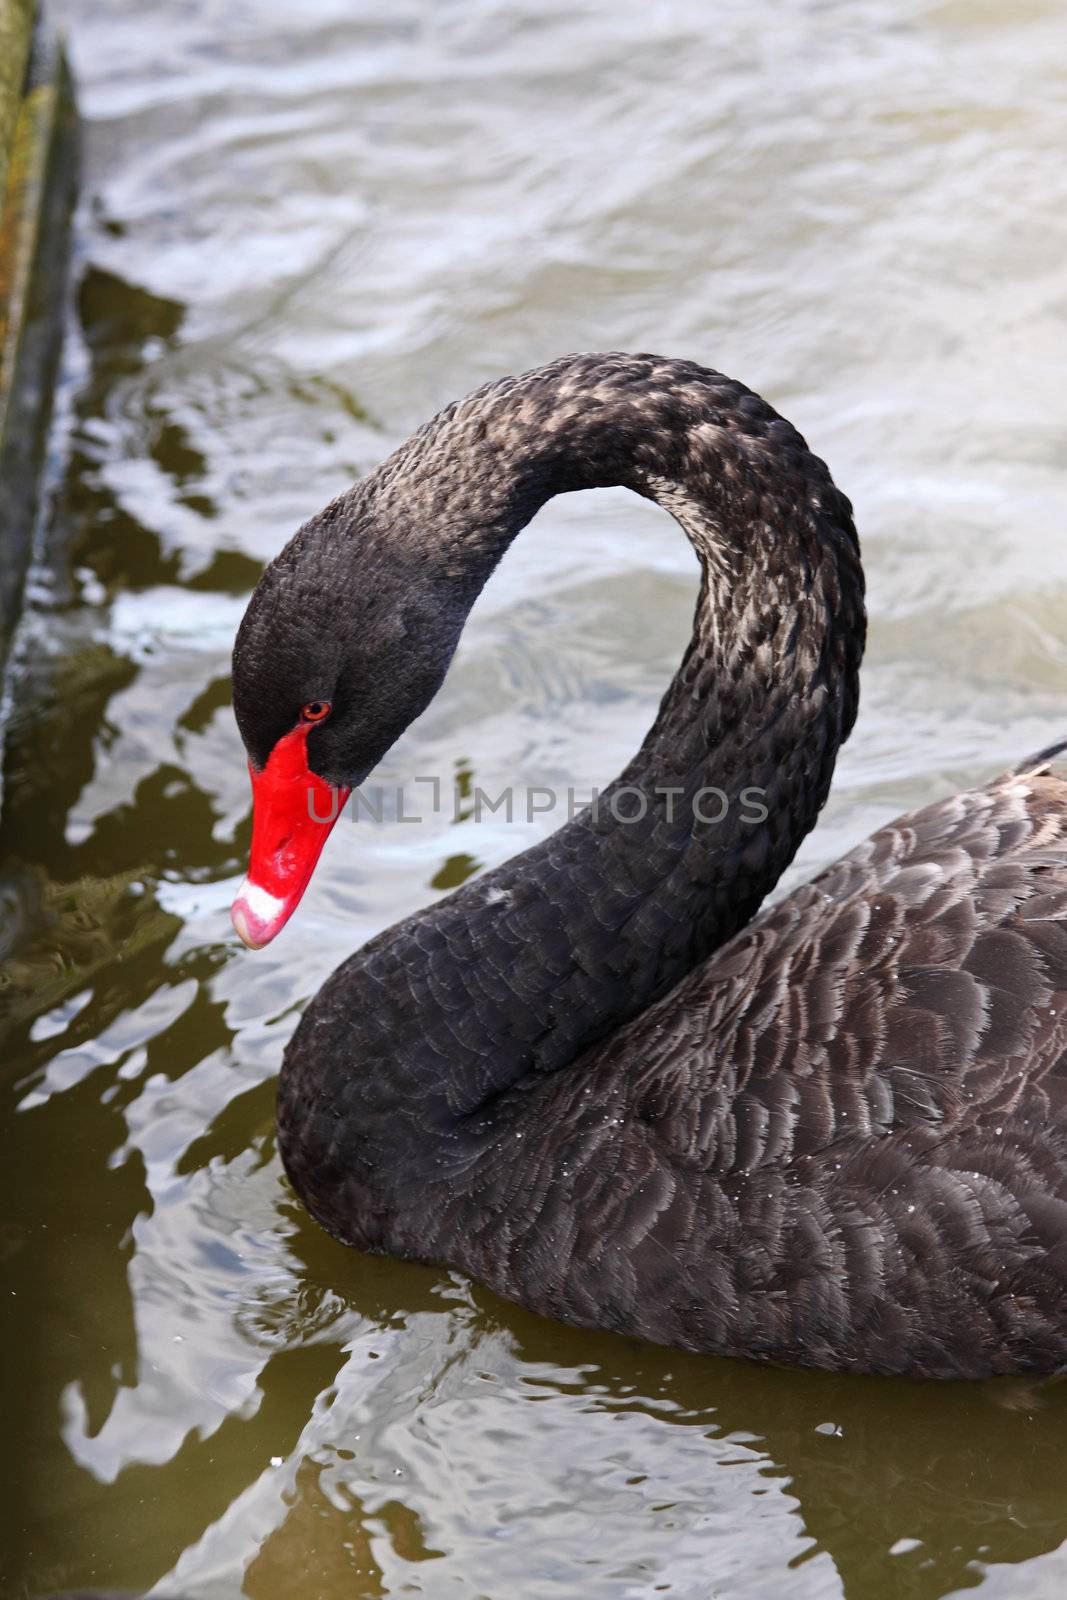 Black Swan 2 by pjhpix